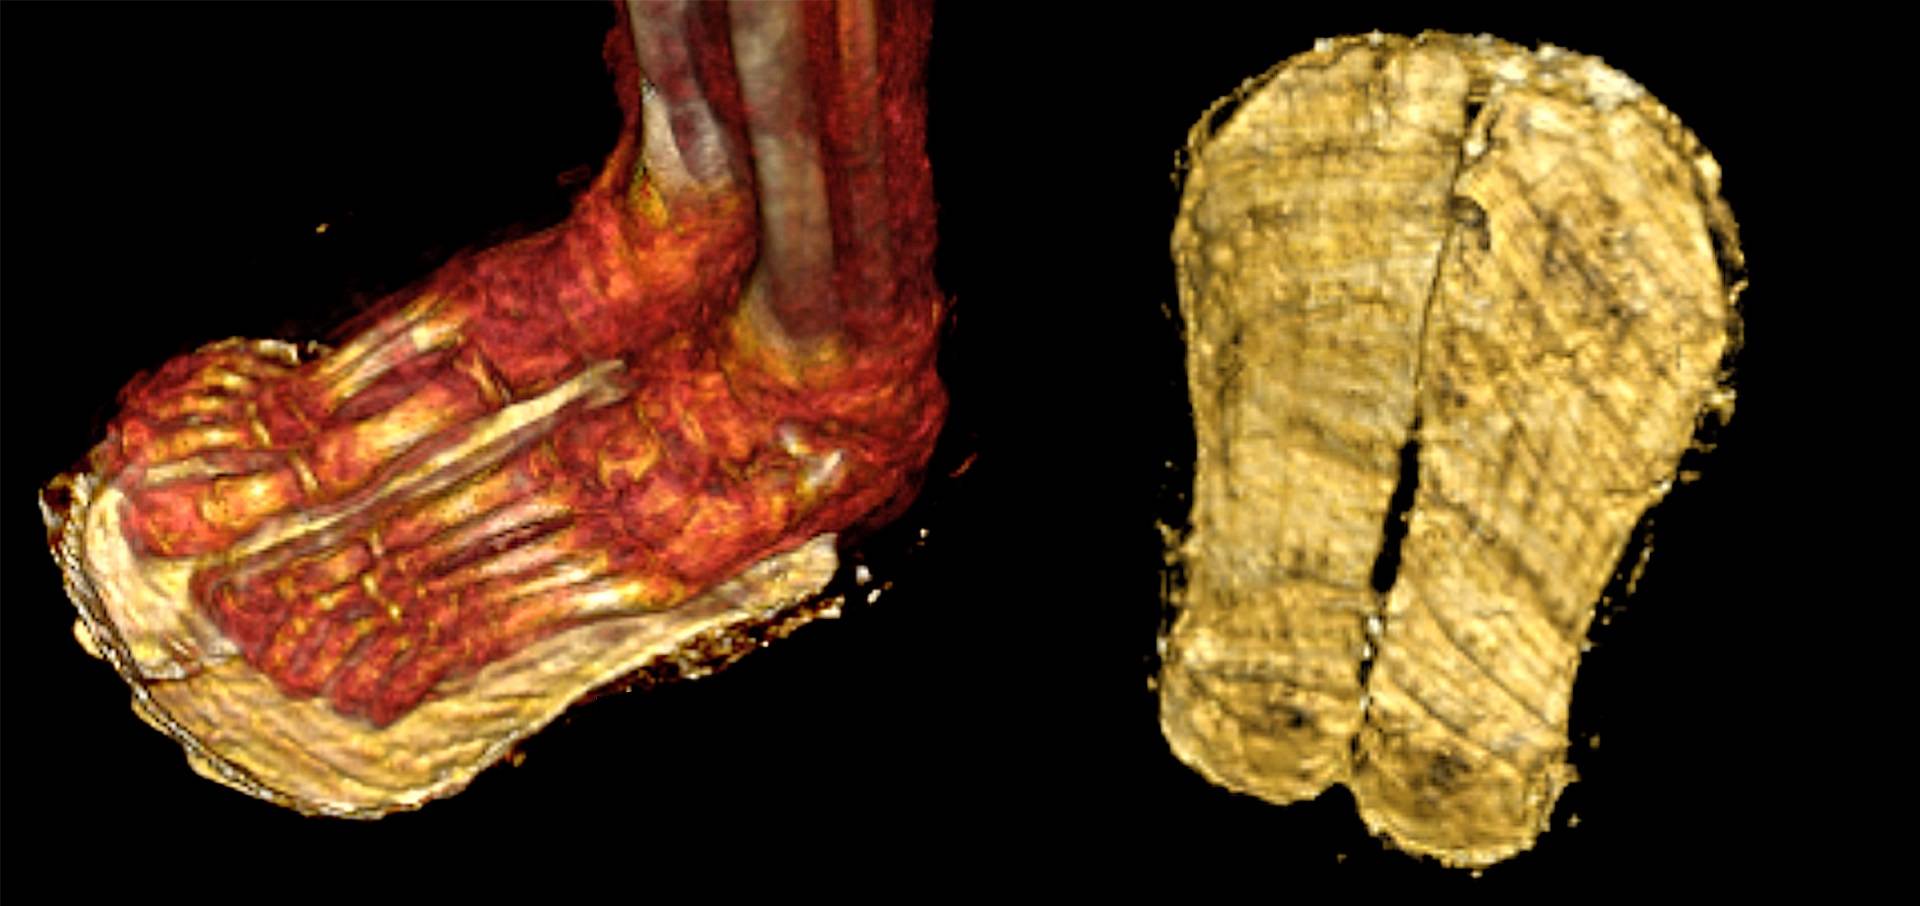 Bij de CT-scan bleek dat de tienerjongen met sandalen aan was gemummificeerd